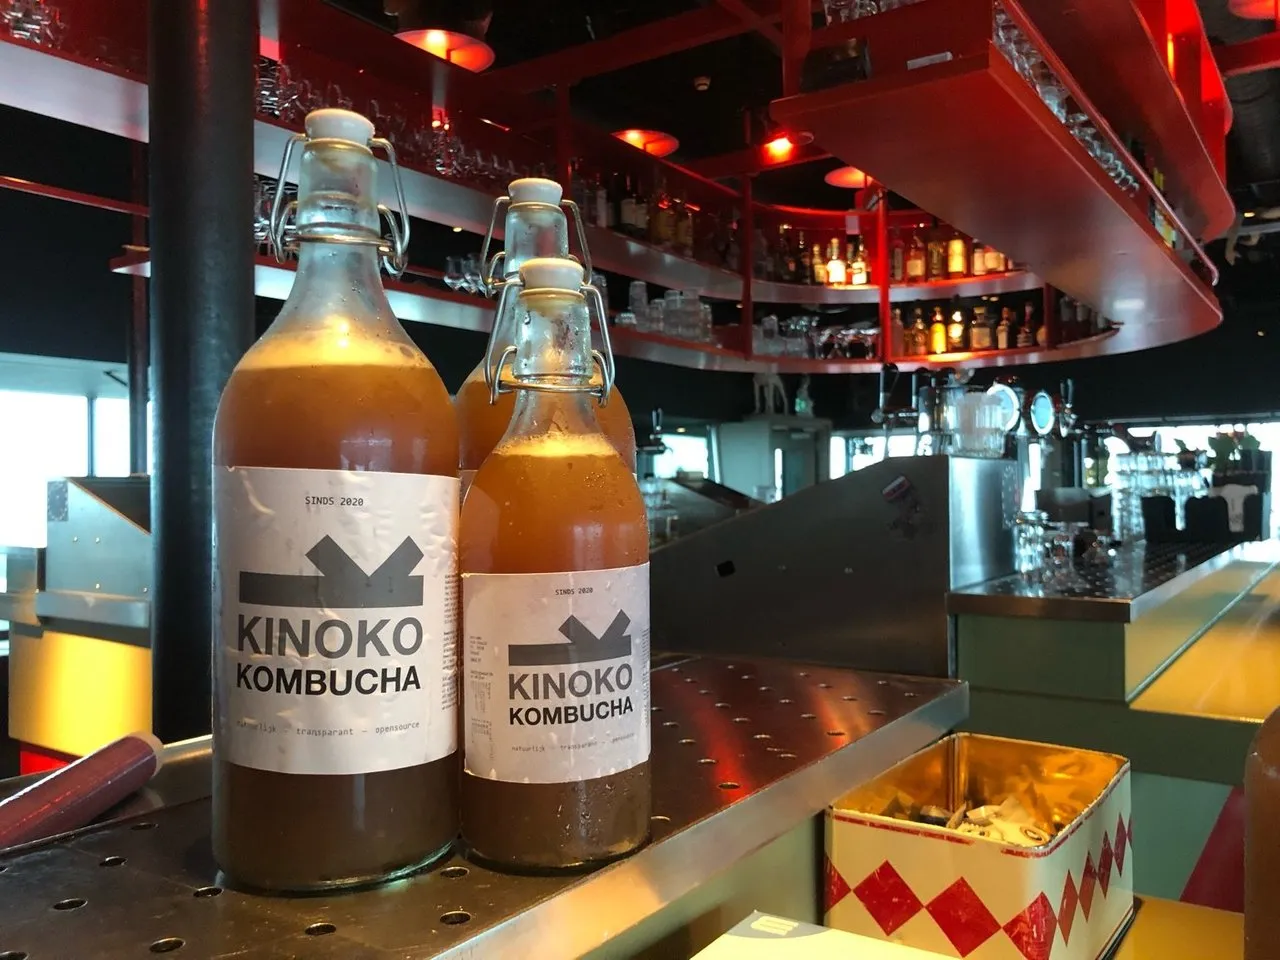 Kinoko sample delivered in SwarmFest's Volkshotel - Amsterdam